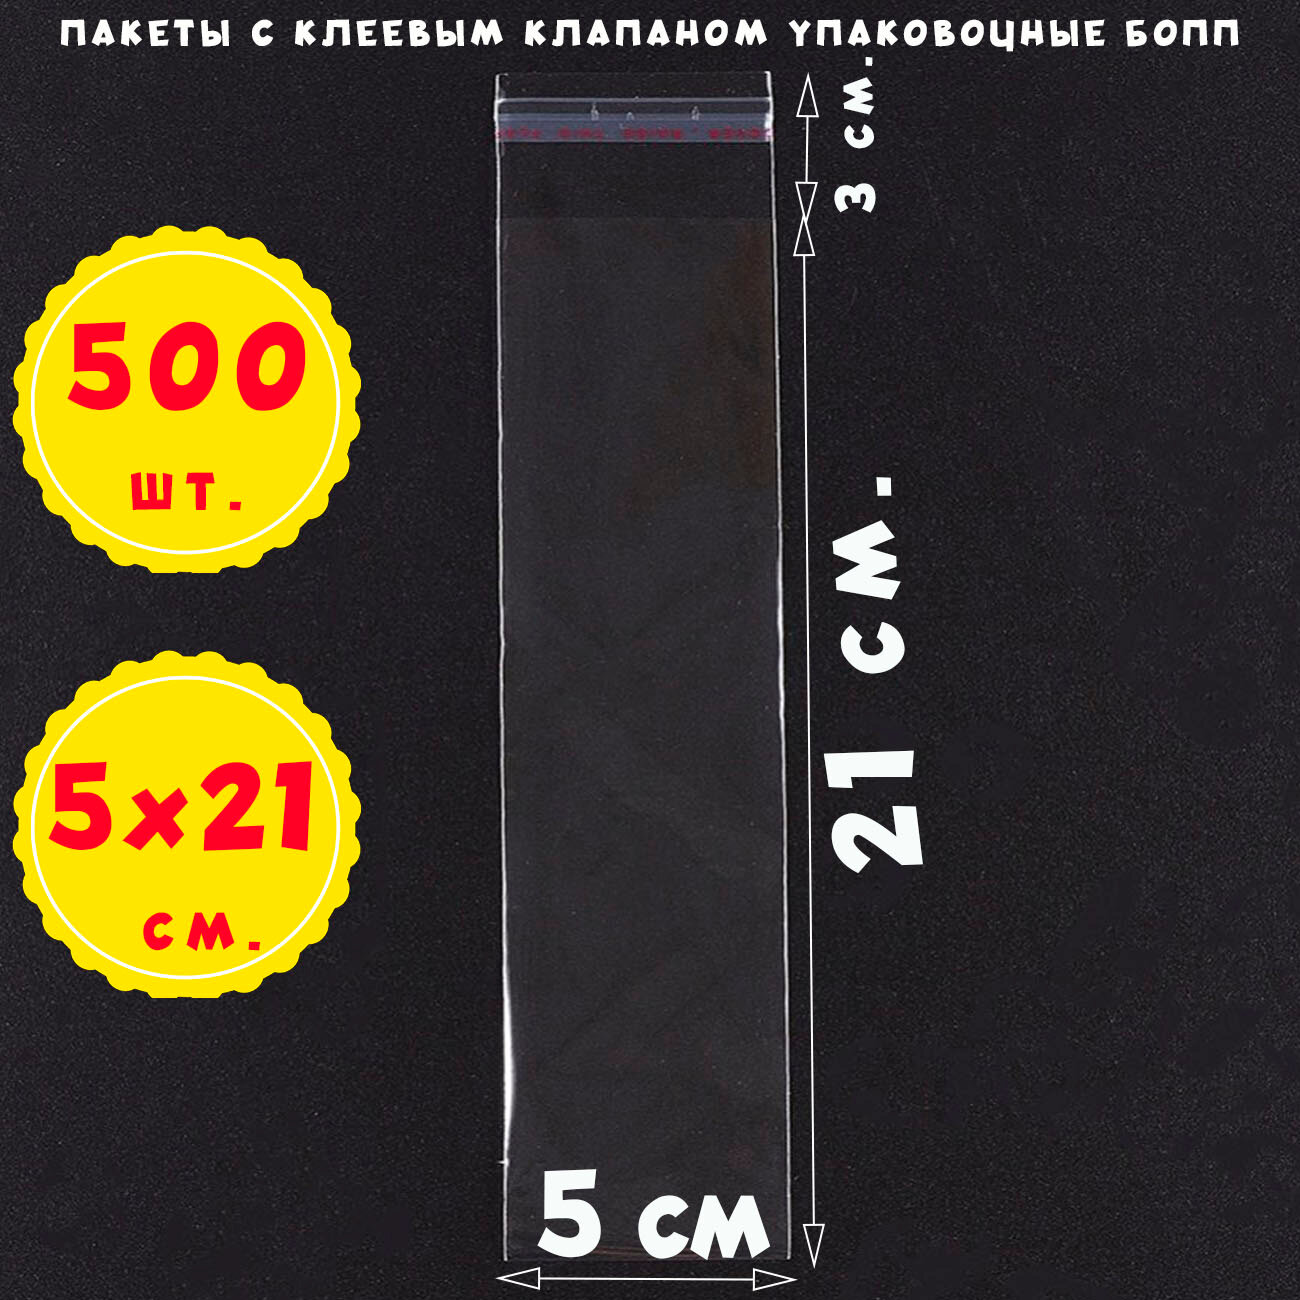 500 пакетов 5х21+3 см прозрачных с клеевым клапаном для упаковки из пленки бопп